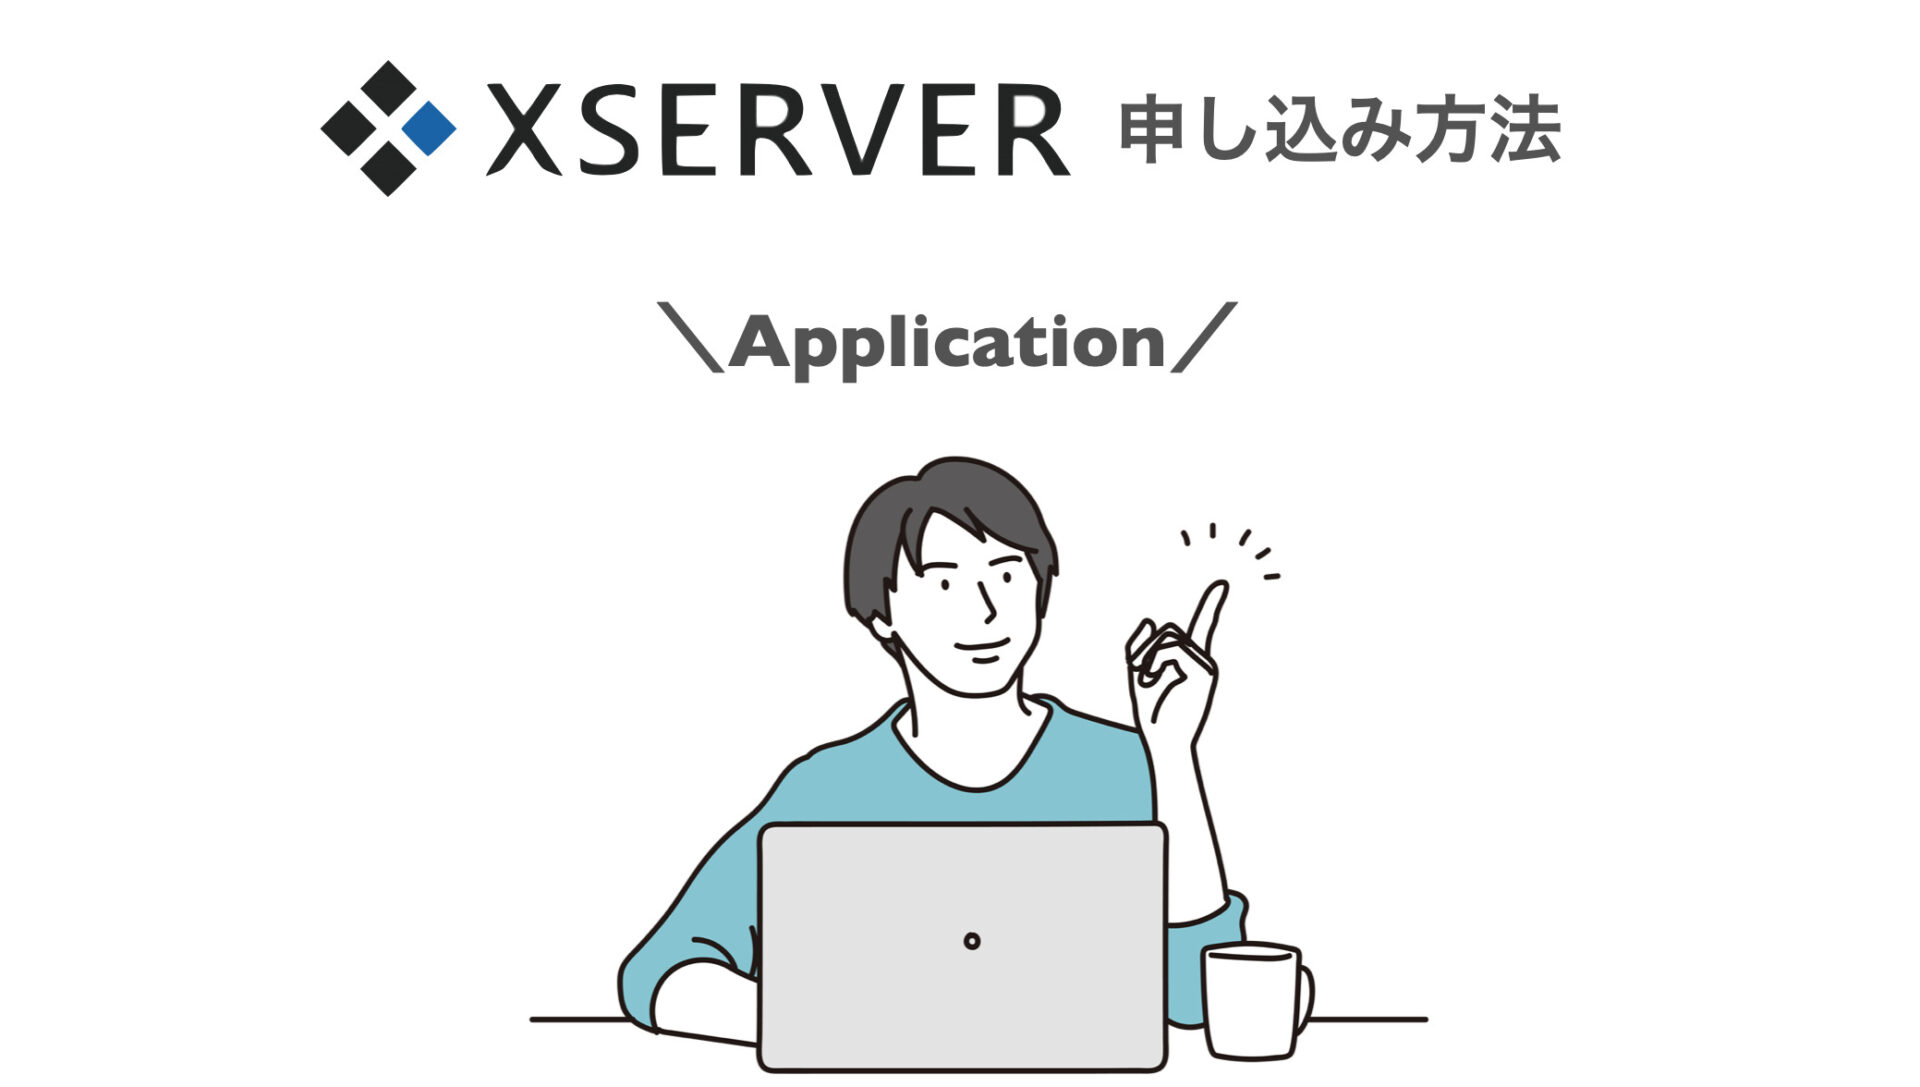 Xserverでの申し込み方法
クイックスタートの始め方について説明します